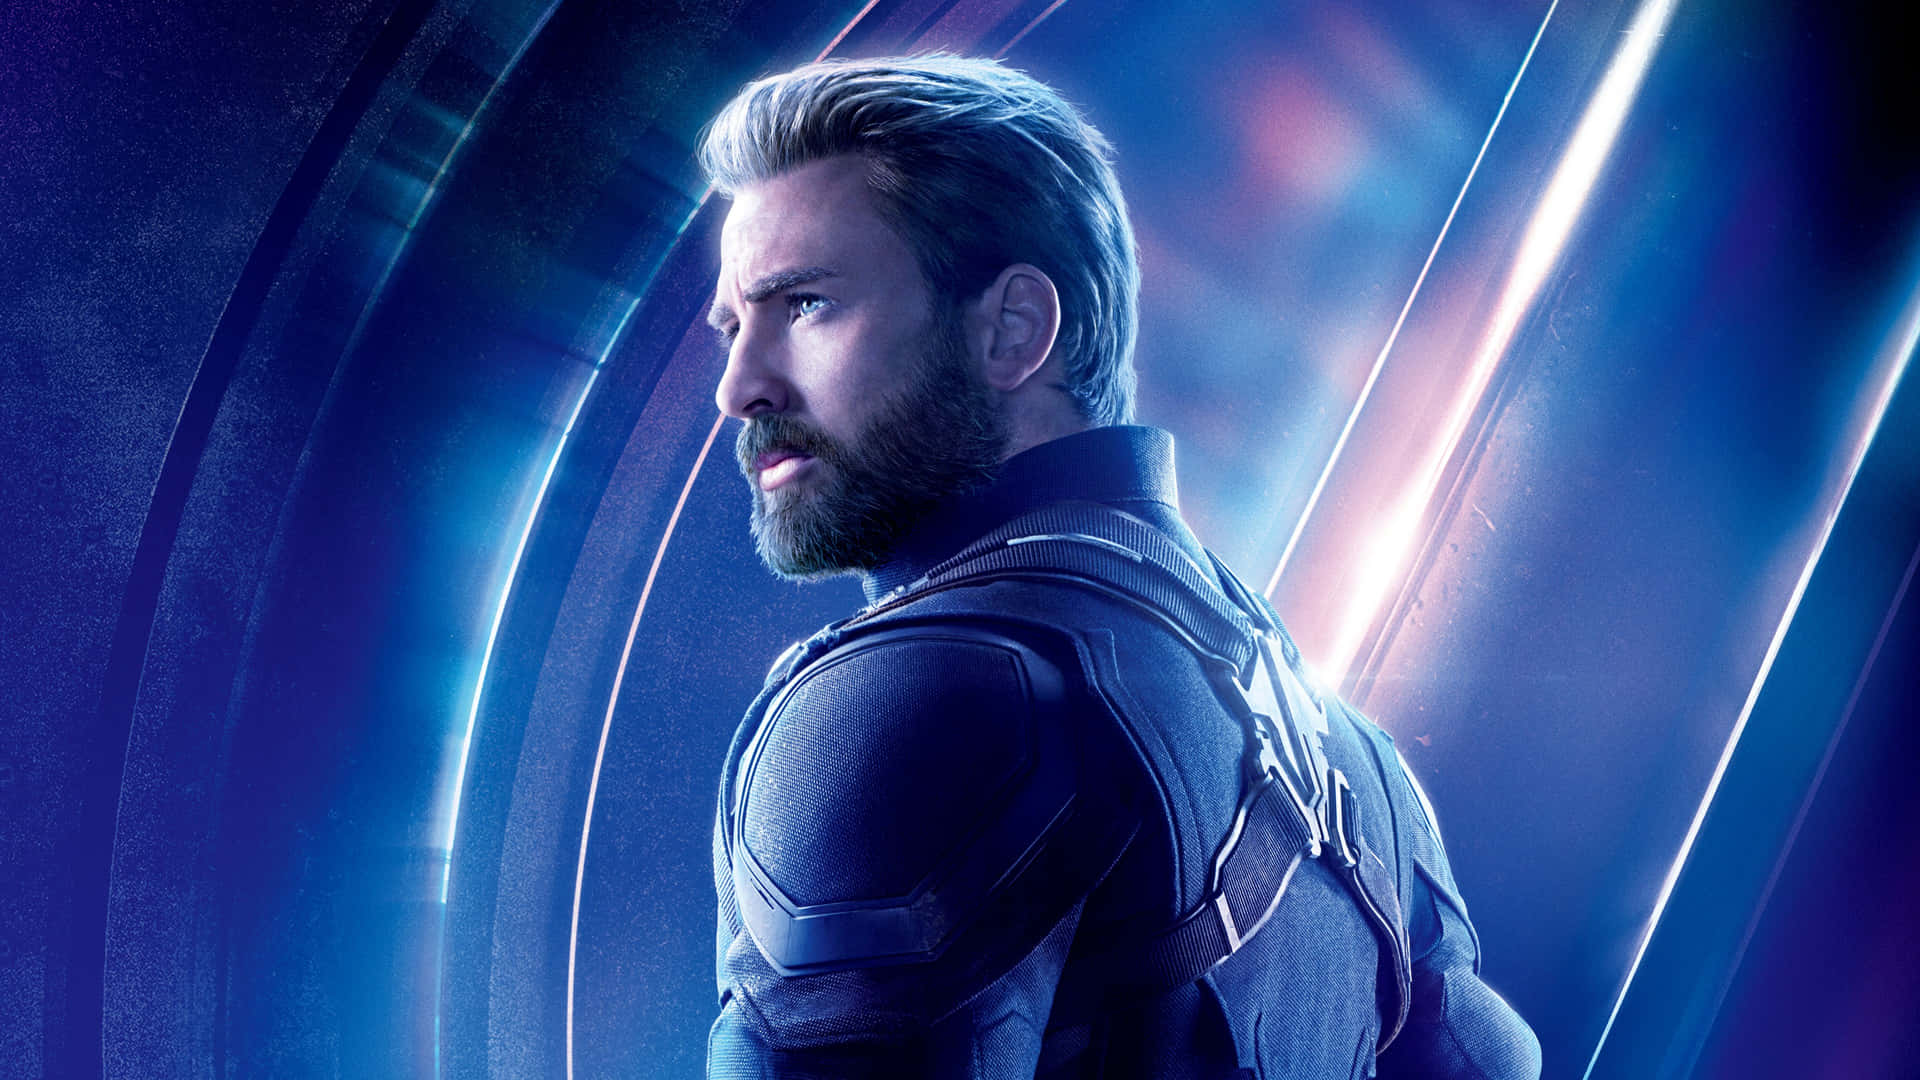 Fondode Pantalla De Capitán América, Steve Rogers, En Un Plano Medio De Avengers Endgame.